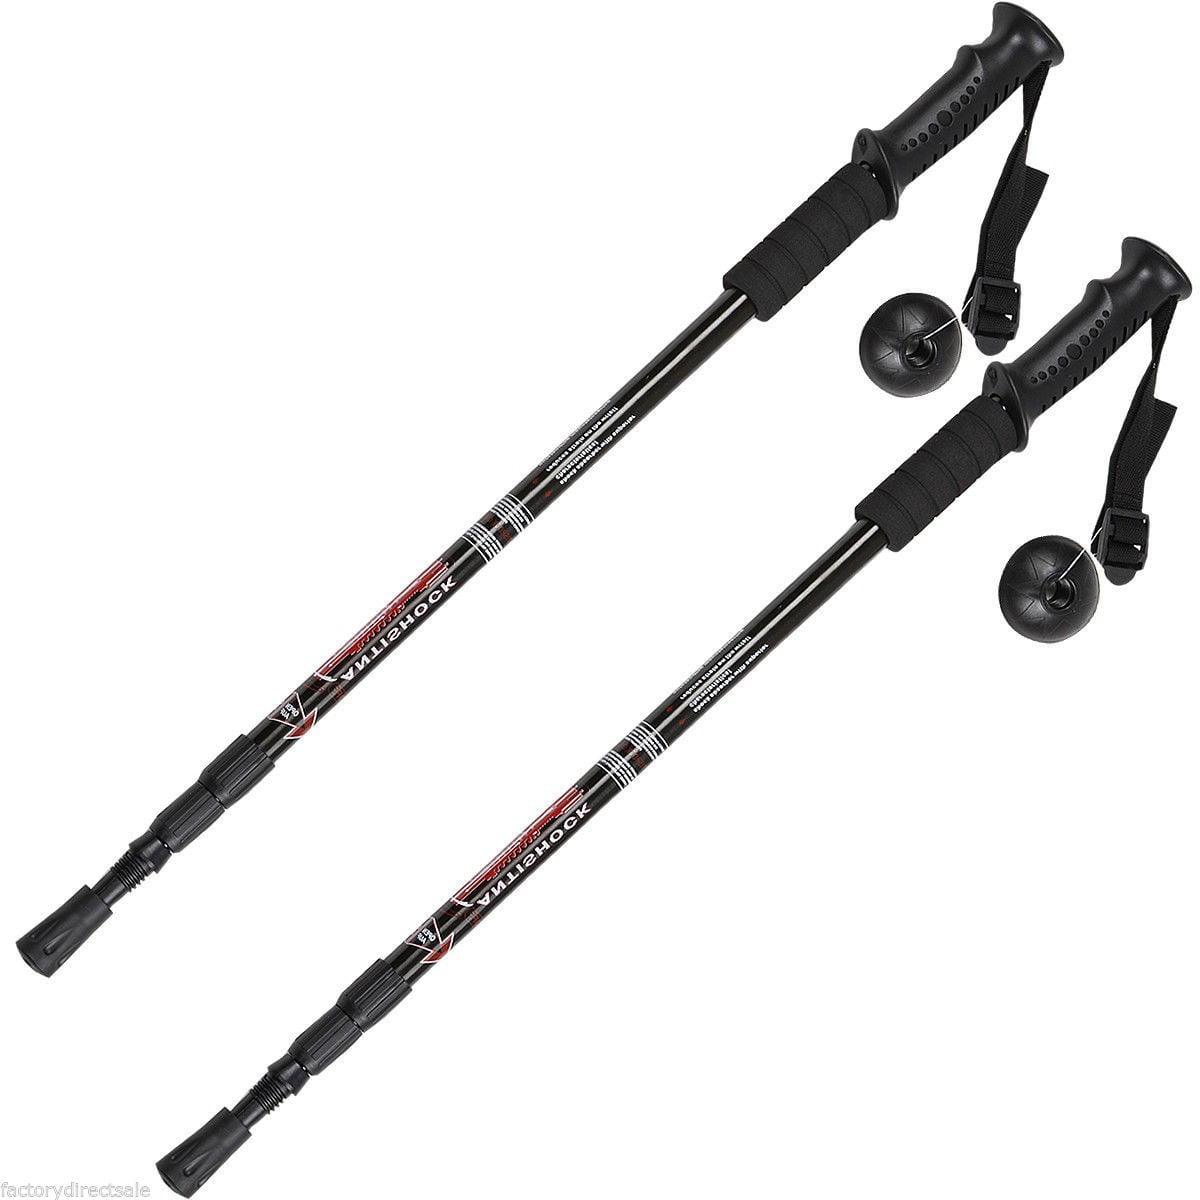 Pair 2 Trekking Walking Hiking Sticks Poles Alpenstock anti-shock 65-135cm Black 